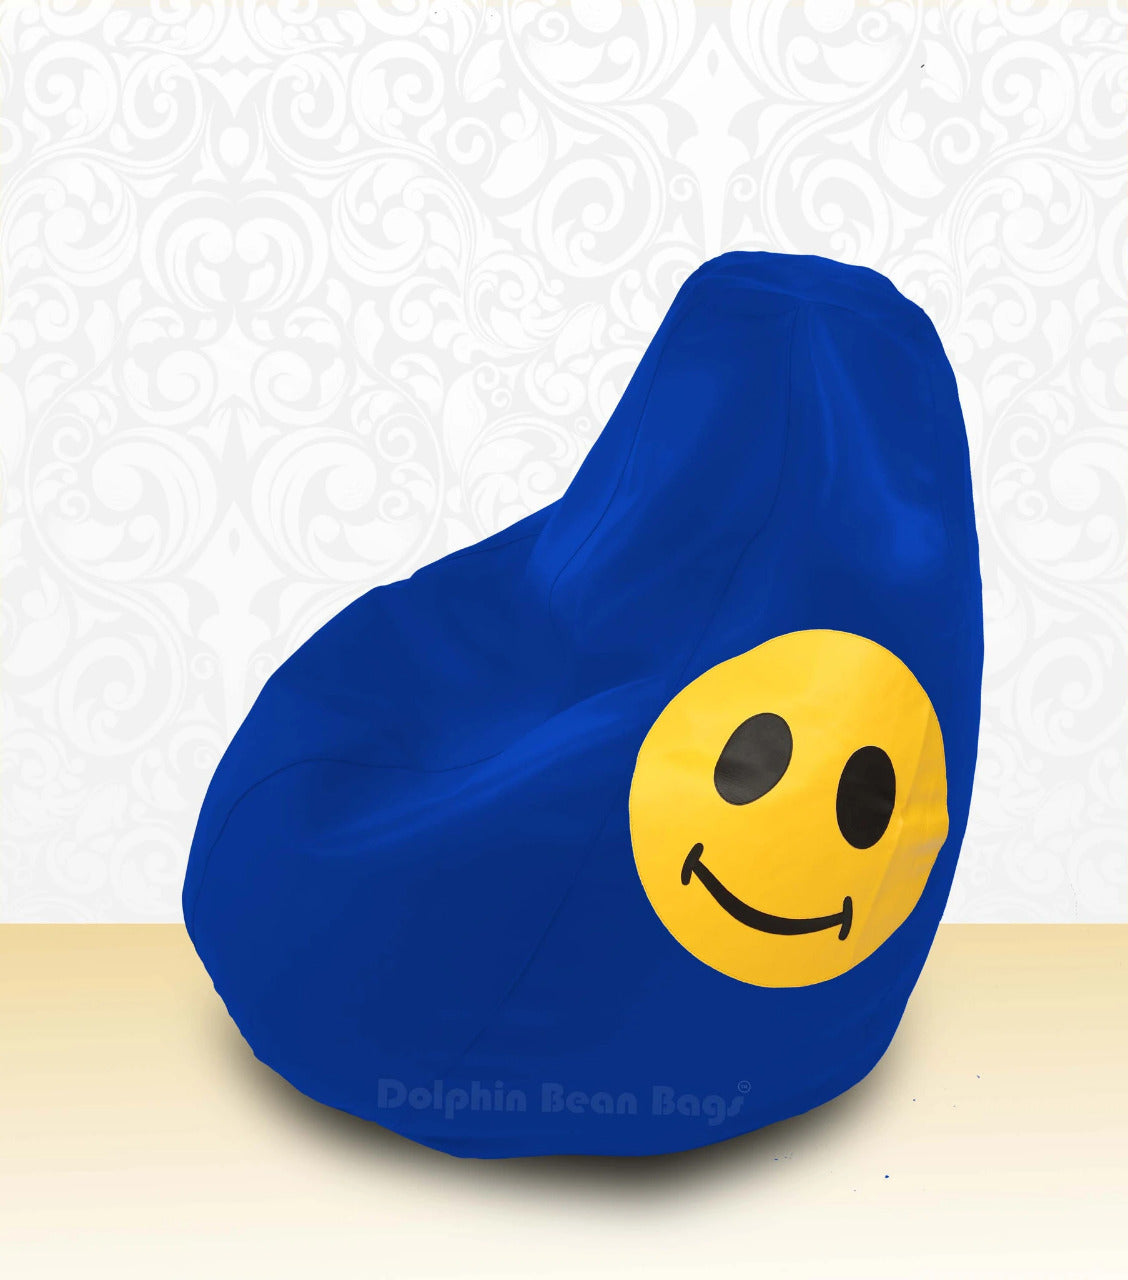 Bean Bag : XL Bean Bag R.Blue-Smiley-FILLED (with Beans)